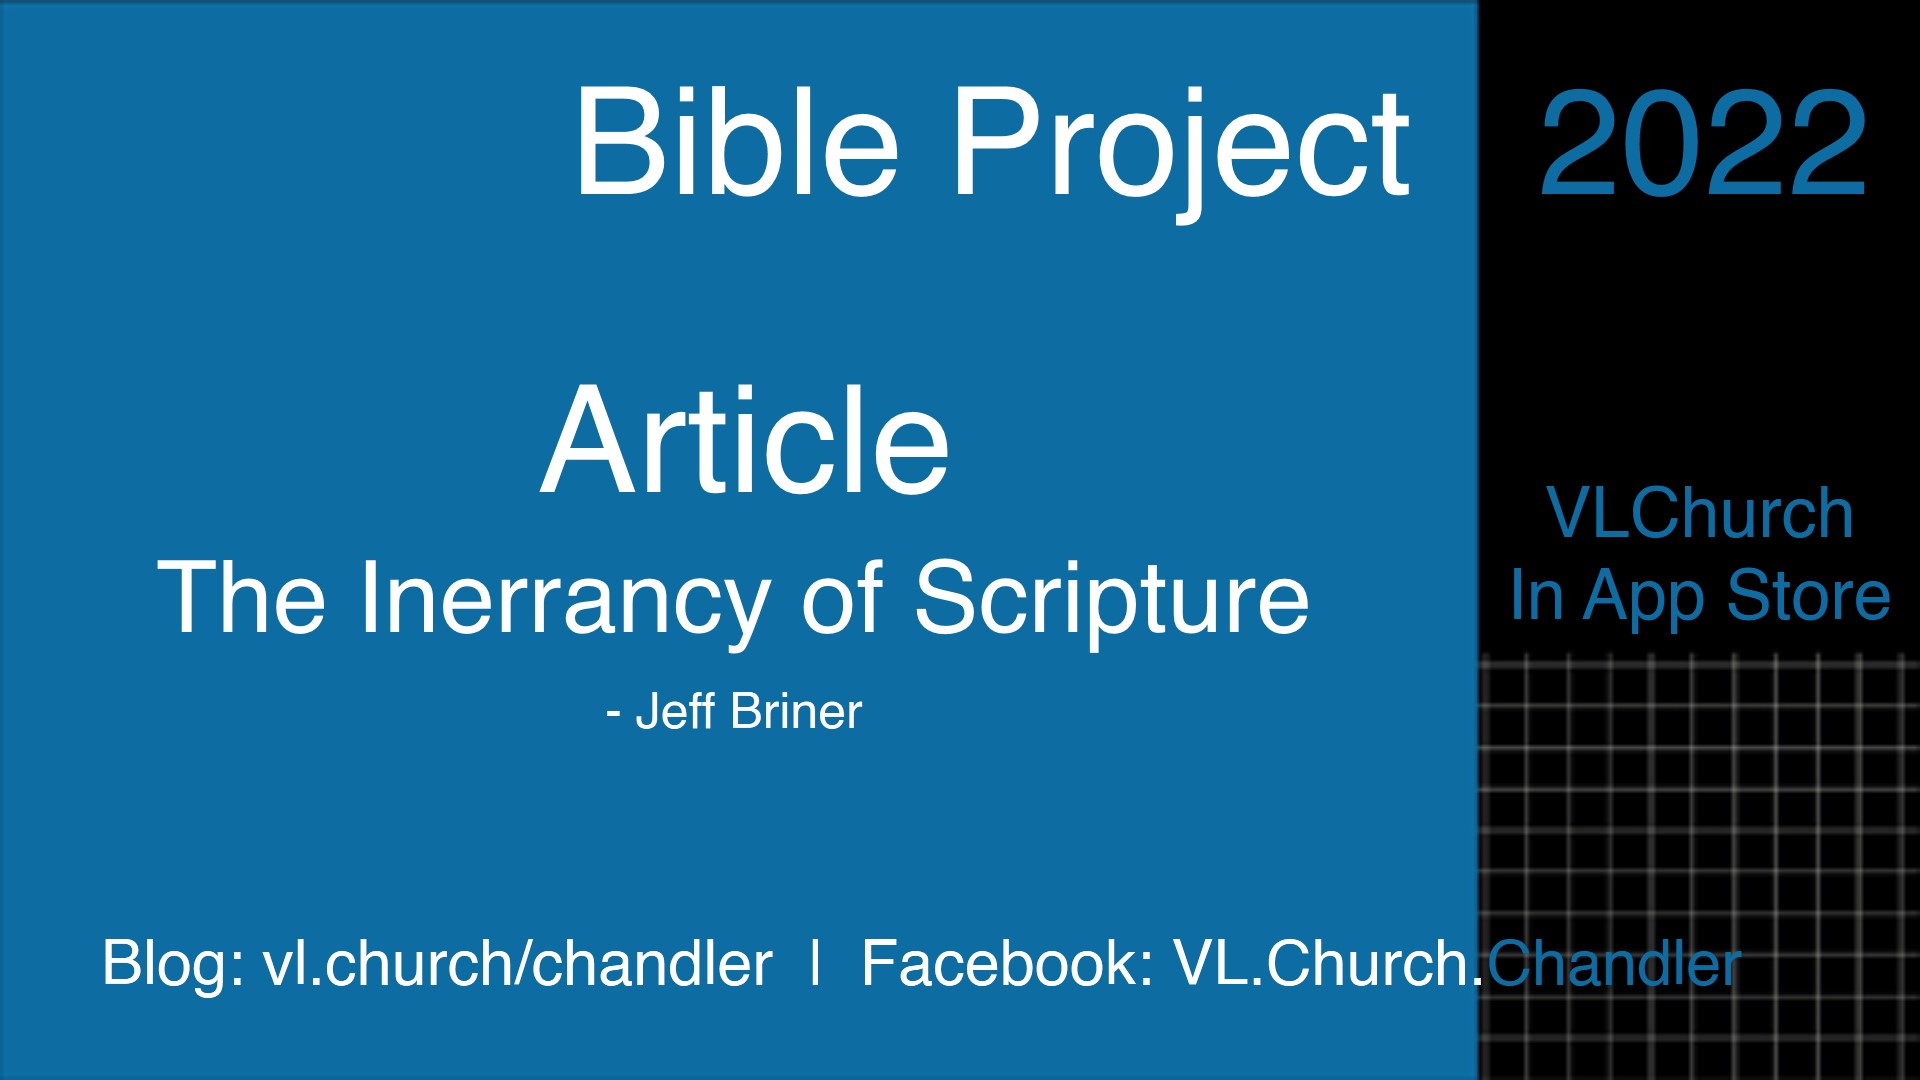 The Inerrancy of Scripture